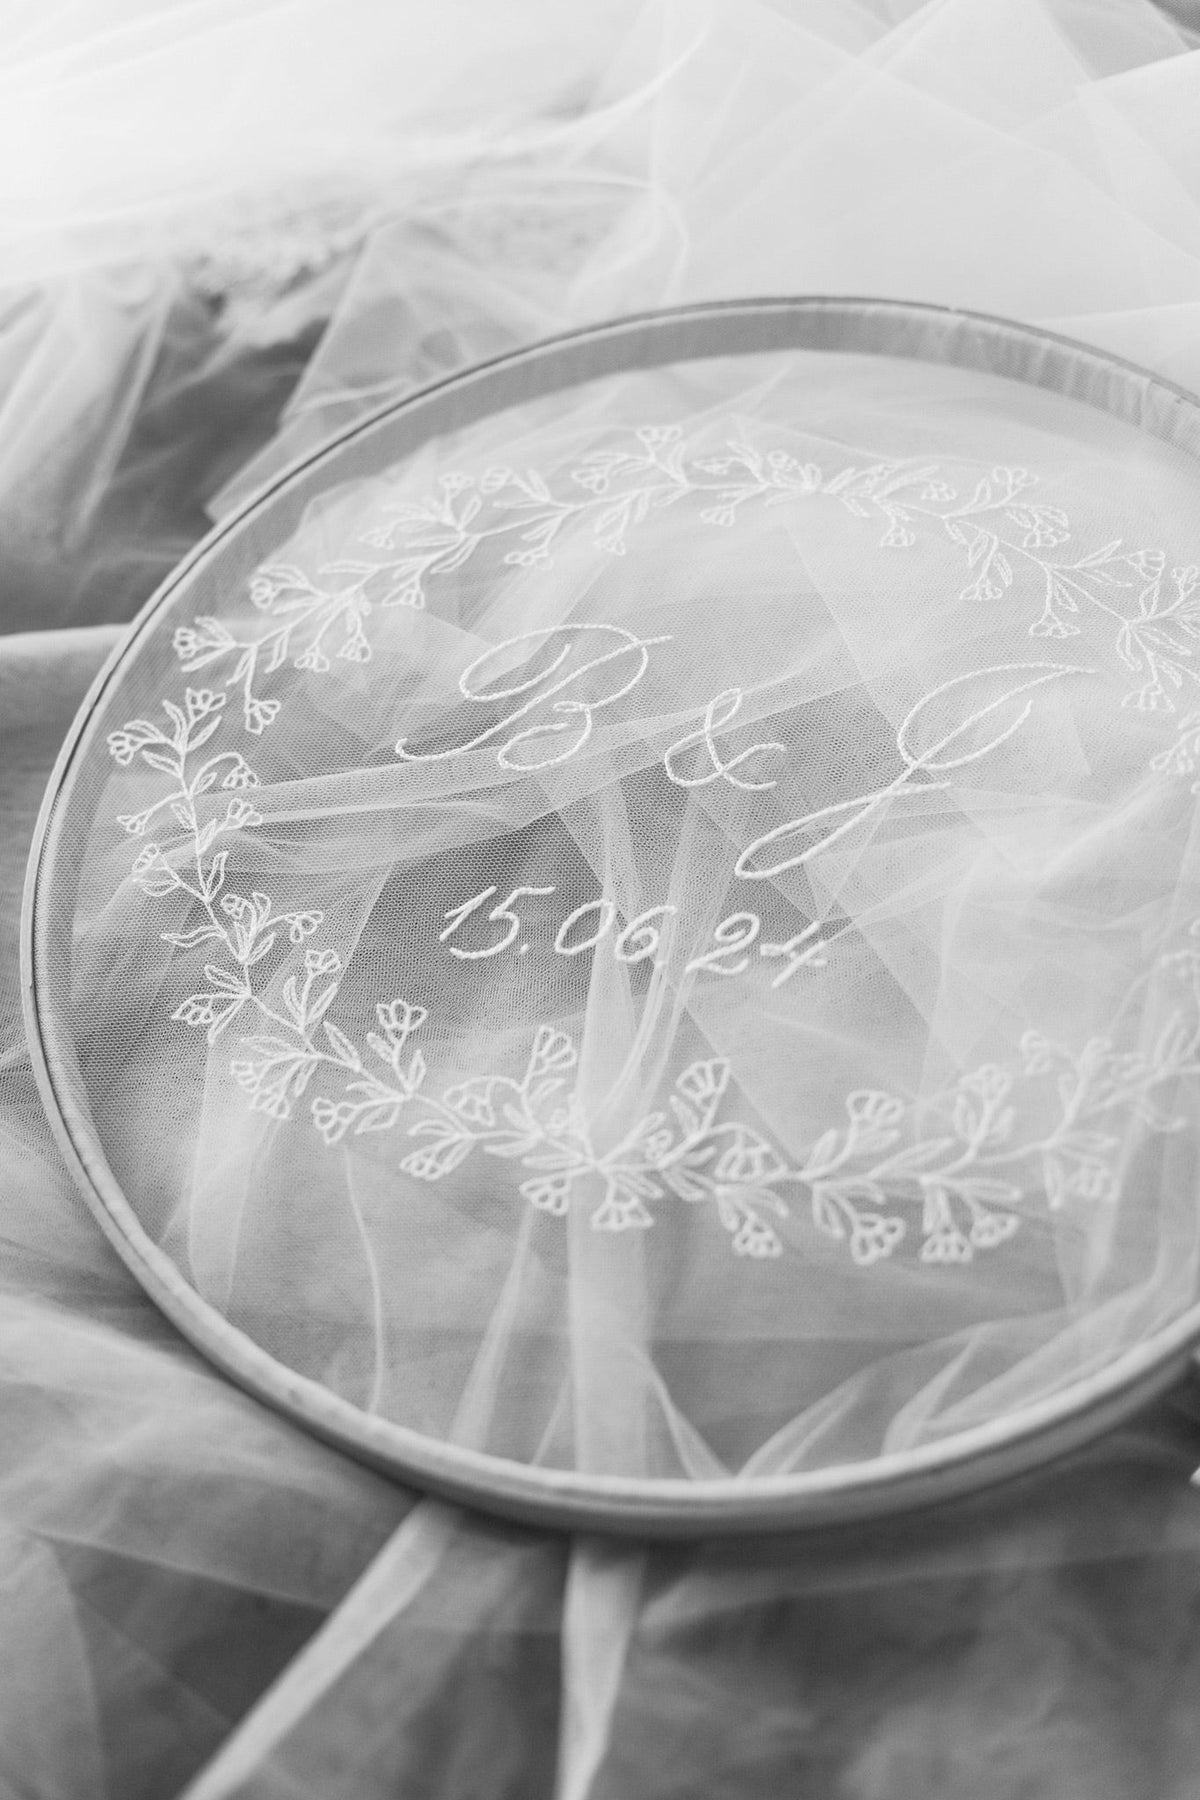 Wedding Veil Semi lace edged leaf wedding veil - &#39;Ferne&#39;